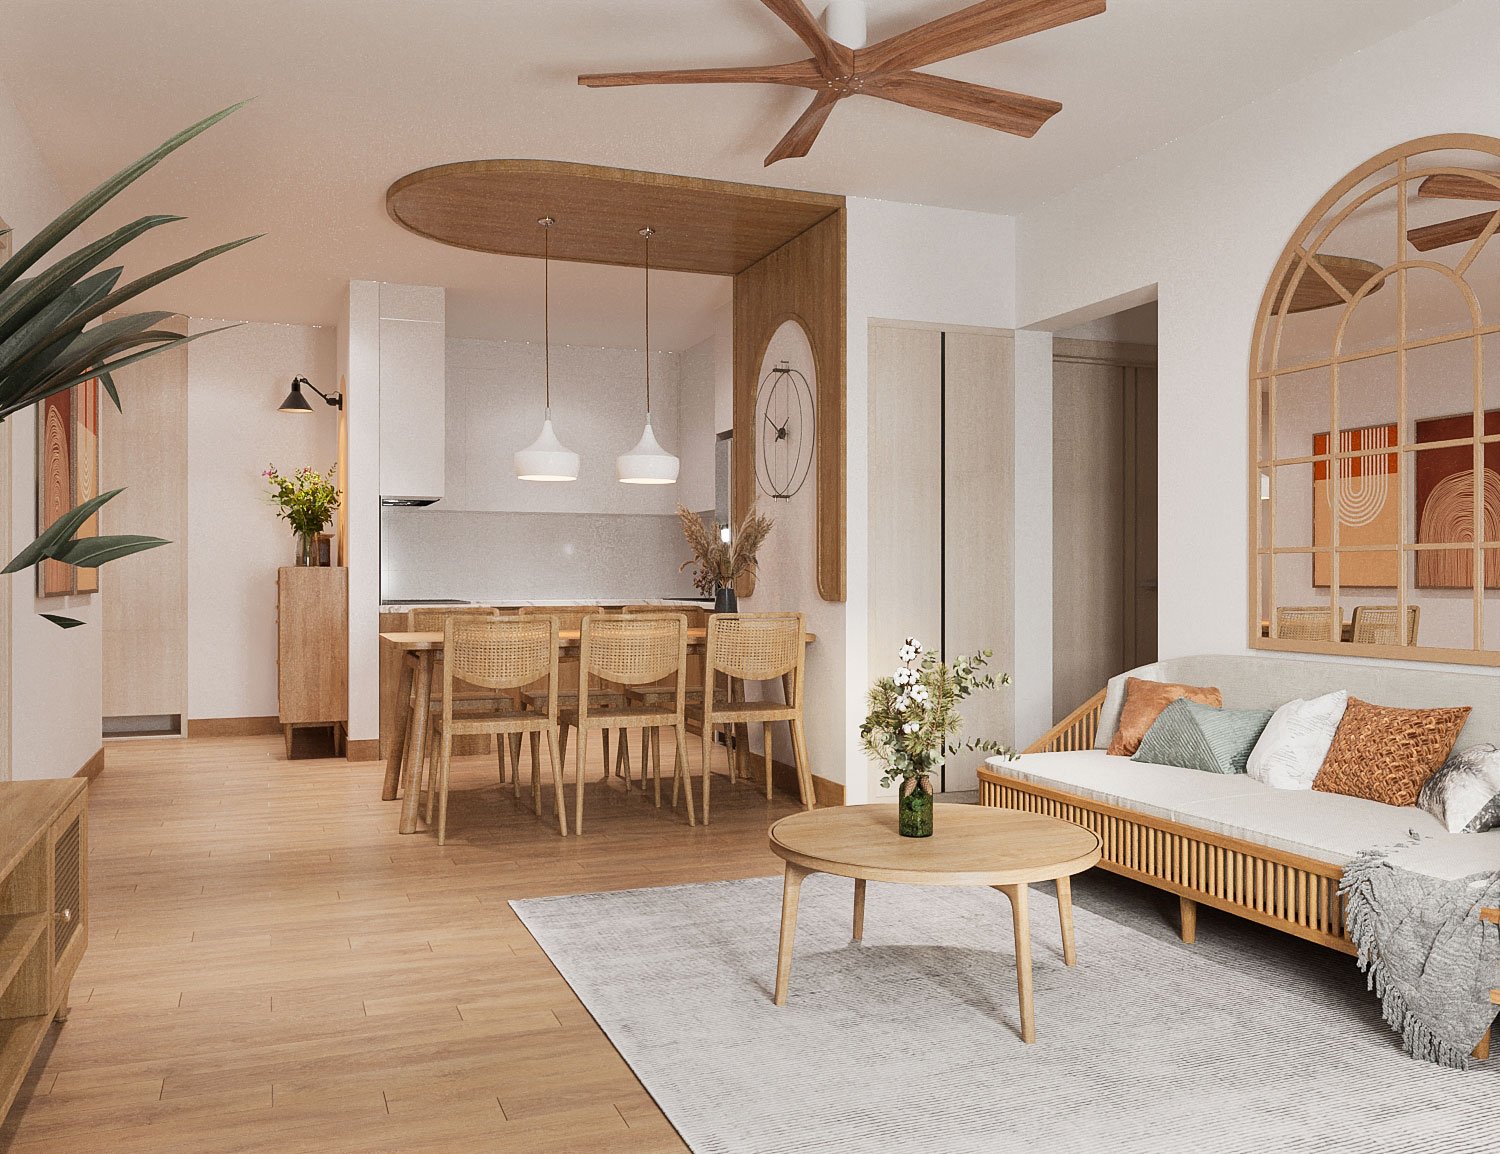 Tất cả các phòng chức năng trong căn hộ 73m2 đều sử dụng nội thất gỗ tông màu sáng ấm áp, kiểu dáng nhỏ gọn, thanh thoát tạo cảm giác thư thái, dễ chịu cho người dùng.